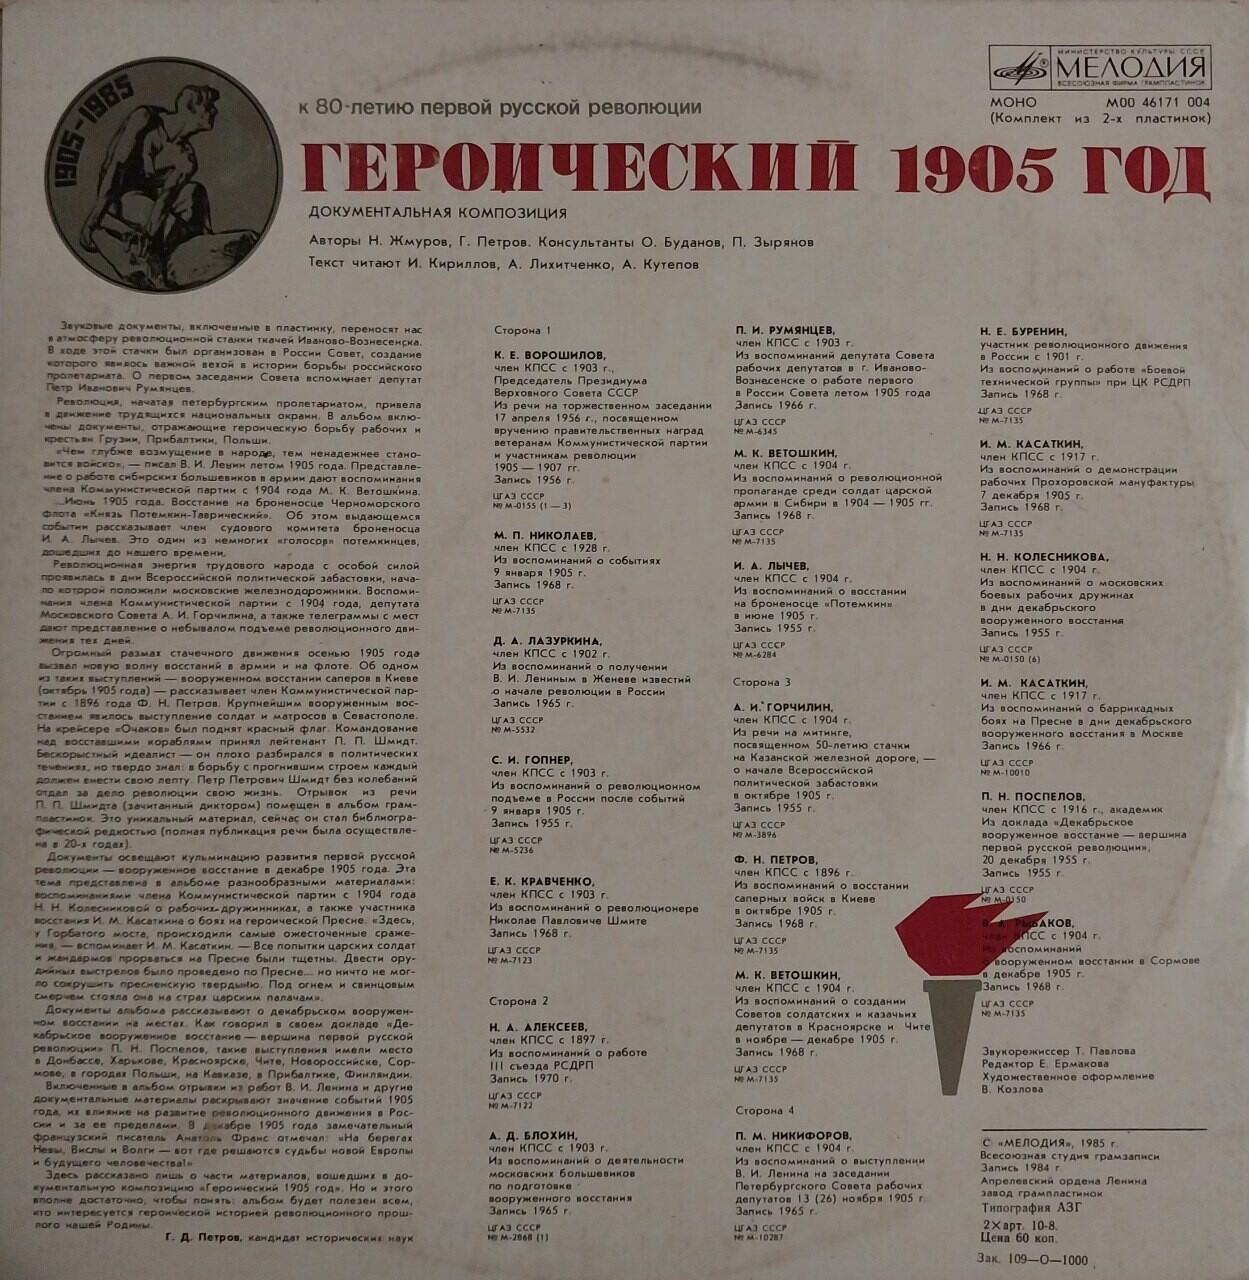 ГЕРОИЧЕСКИЙ 1905 ГОД: Документальная композиция